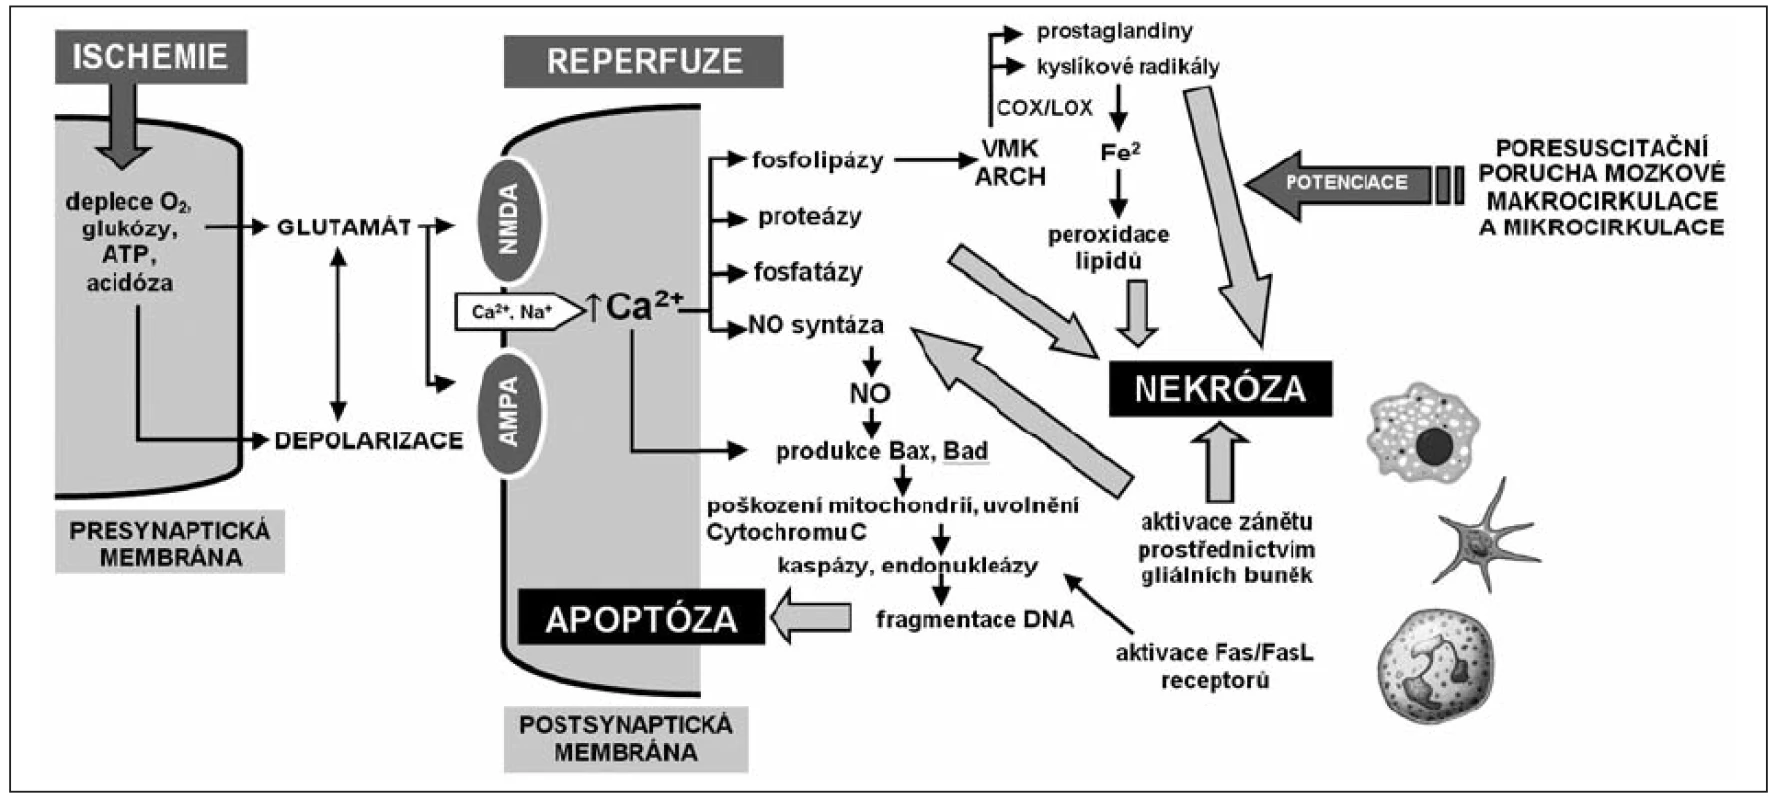 Celulární a subcelulární mechanismy ischemicko-reperfuzního poškození mozku
ATP – adenosintrifosfát, NMDA – N-metyl-D-aspartátový receptor, AMPA – amino-3-hydroxy-5-metylisoxazole-4-propionátový receptor, NO – oxid dusnatý, VMK – volné mastné kyseliny, ARCH – kyselina arachidonová, COX – cyklooxygenáza, LOX – lipooxygenáza, DNA – kyselina deoxyribonukleová